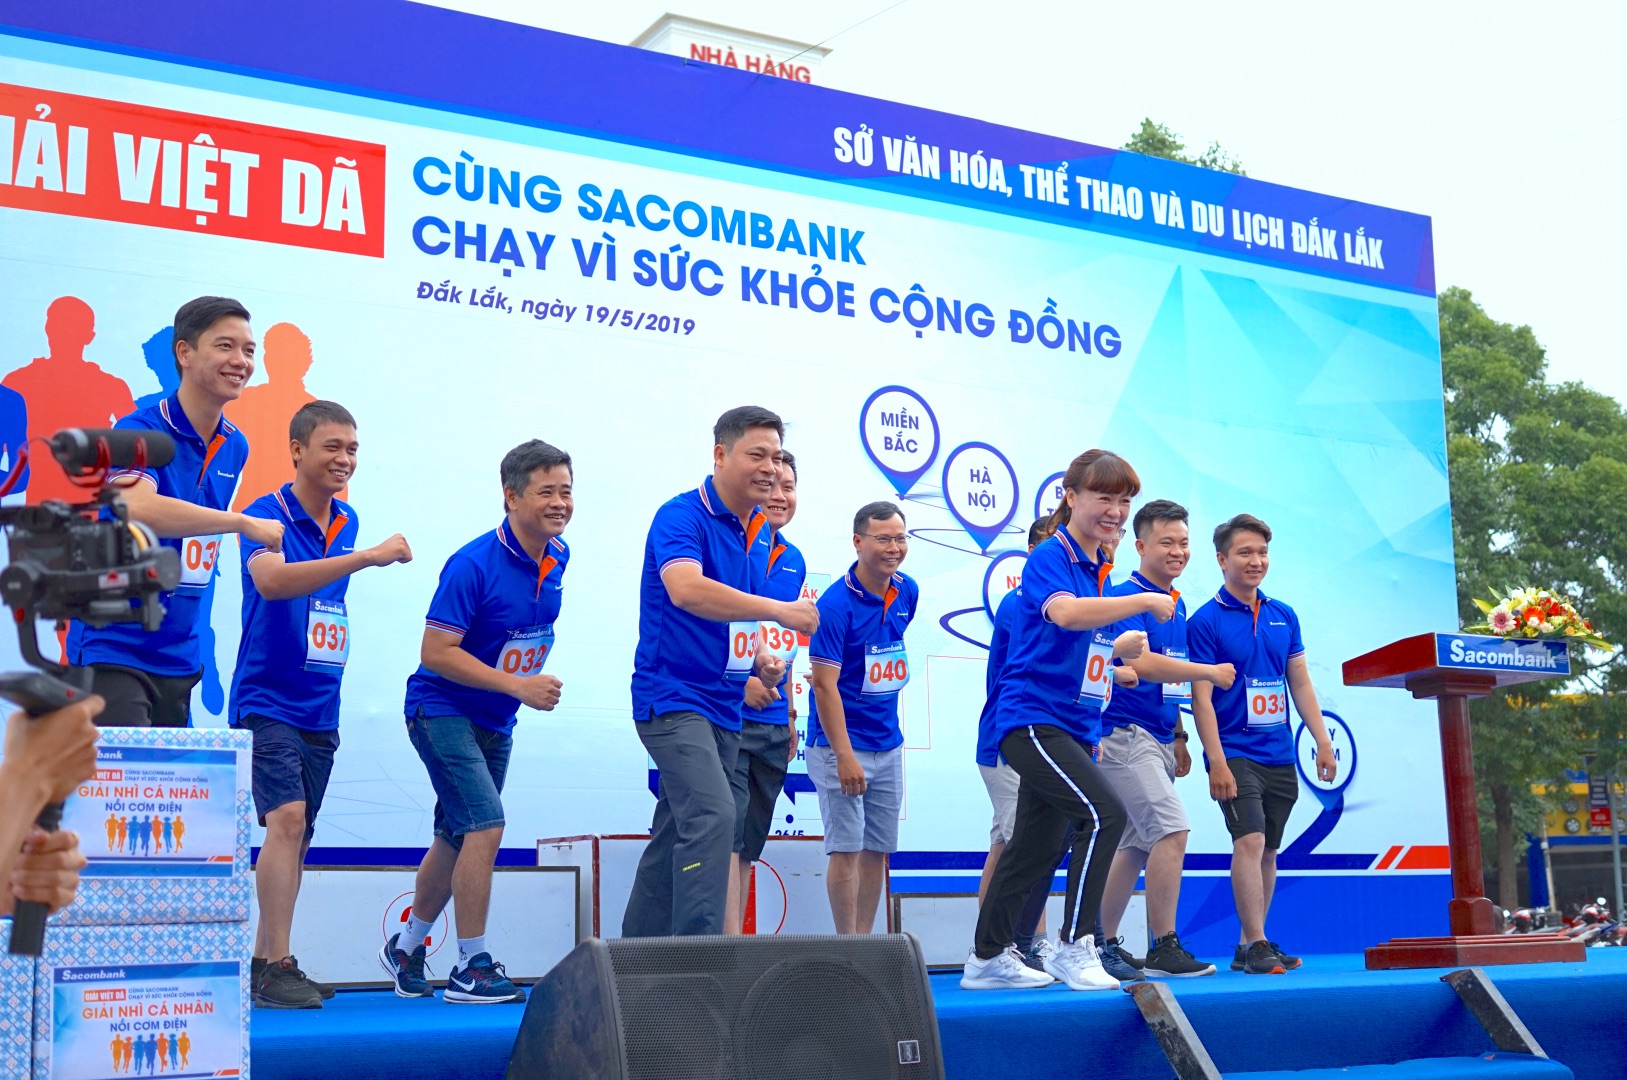 Giải Việt dã “Cùng Sacombank chạy vì sức khoẻ cộng đồng” tỉnh Đắk Lắk năm 2019